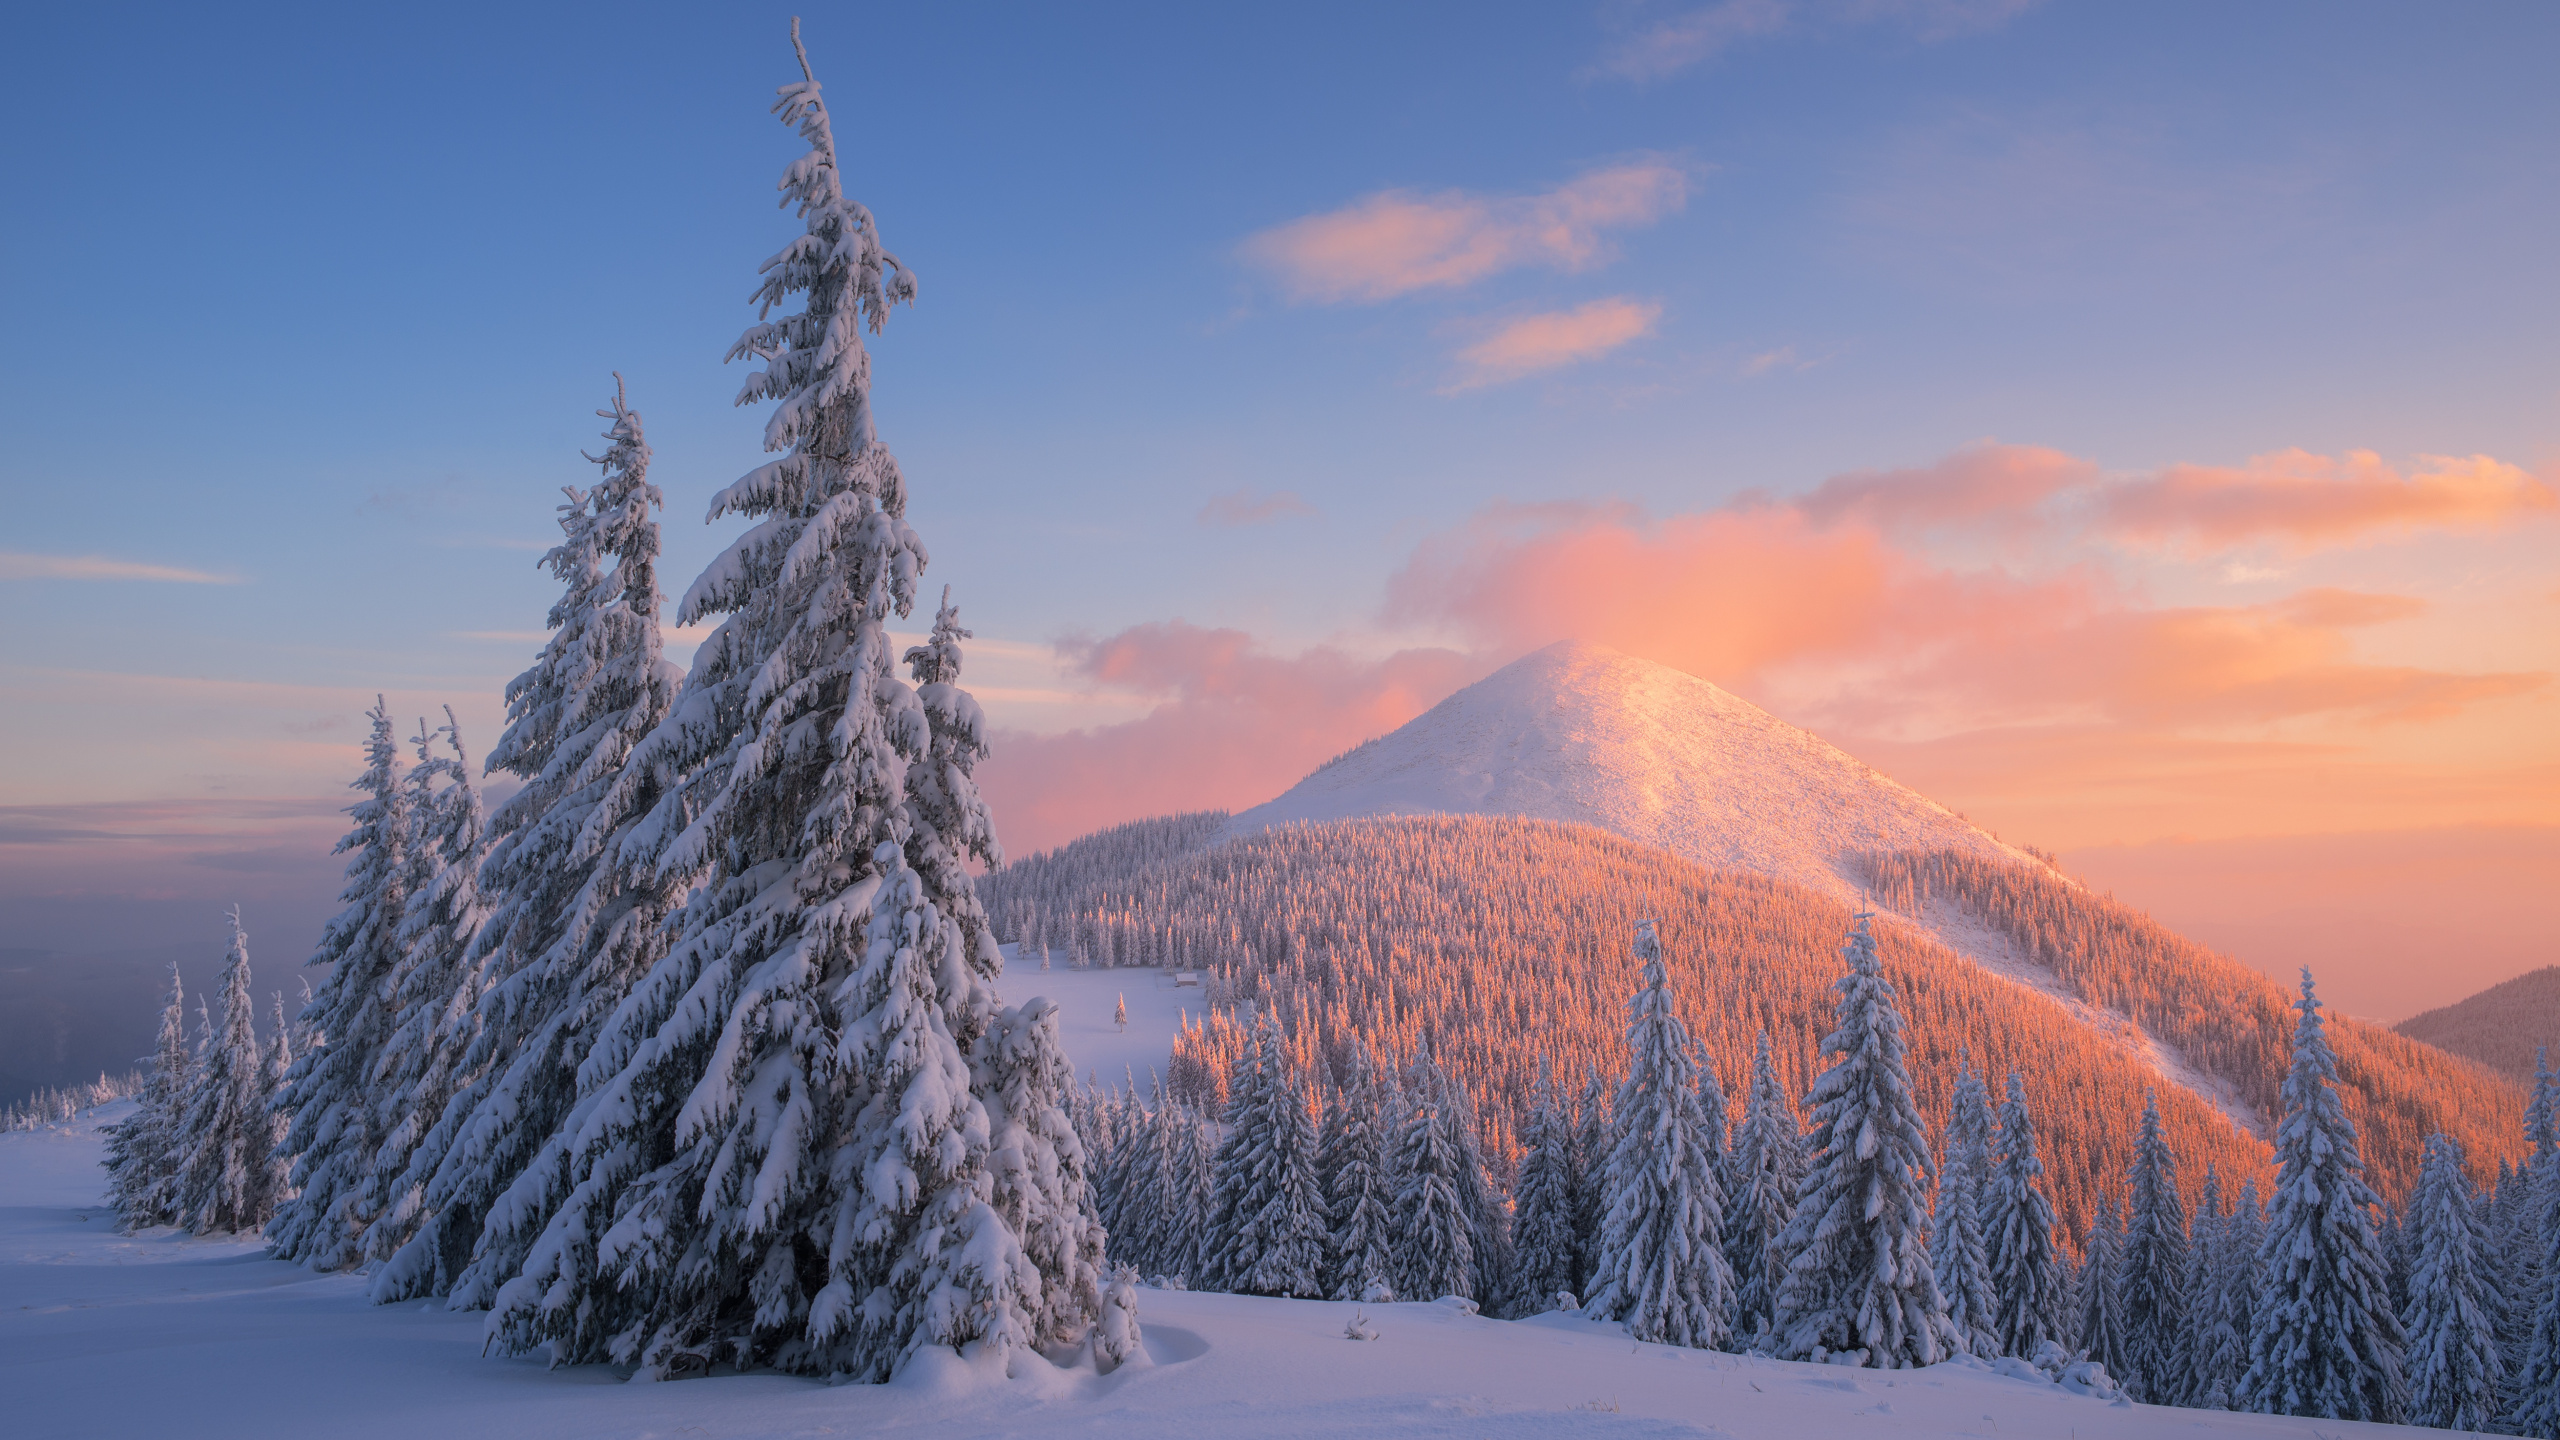 冬天, 冻结, 安装的风景, 山脉, 天空 壁纸 2560x1440 允许